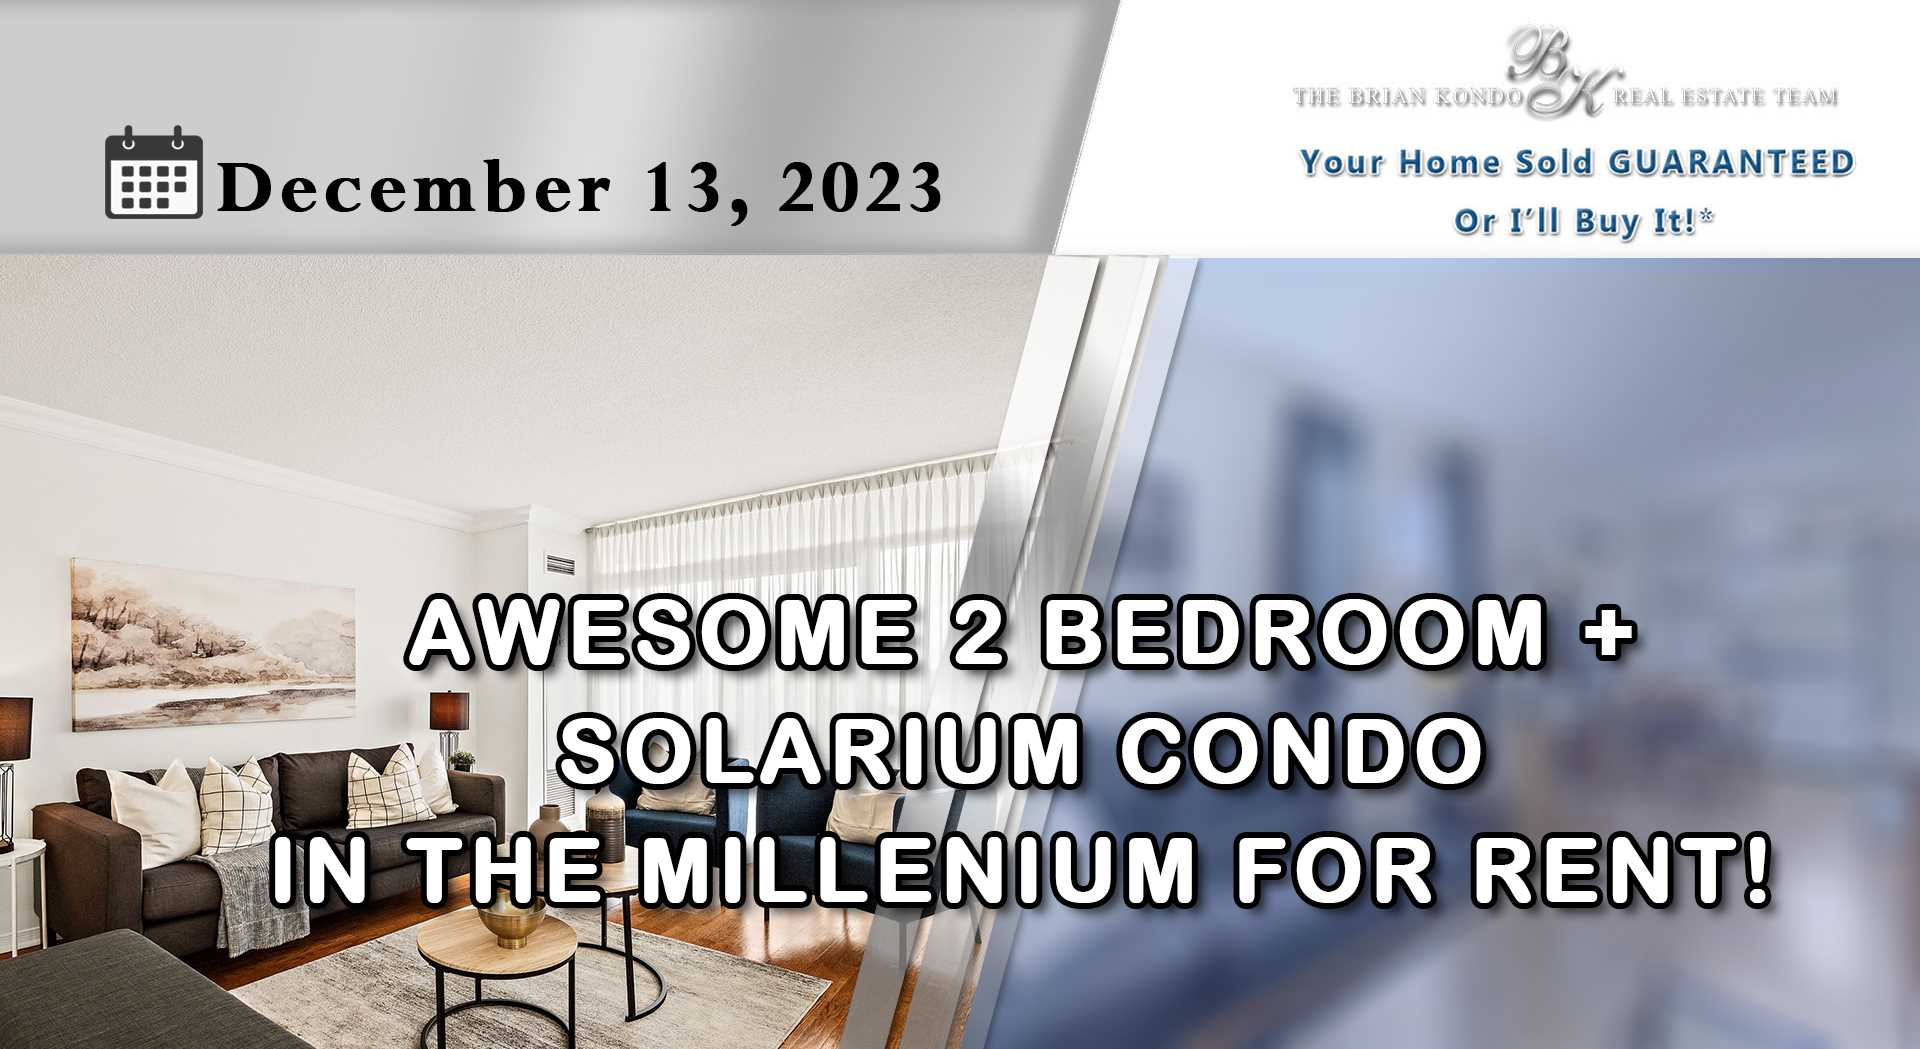 AWESOME 2 BEDROOM + SOLARIUM CONDO IN THE MILLENIUM FOR RENT!